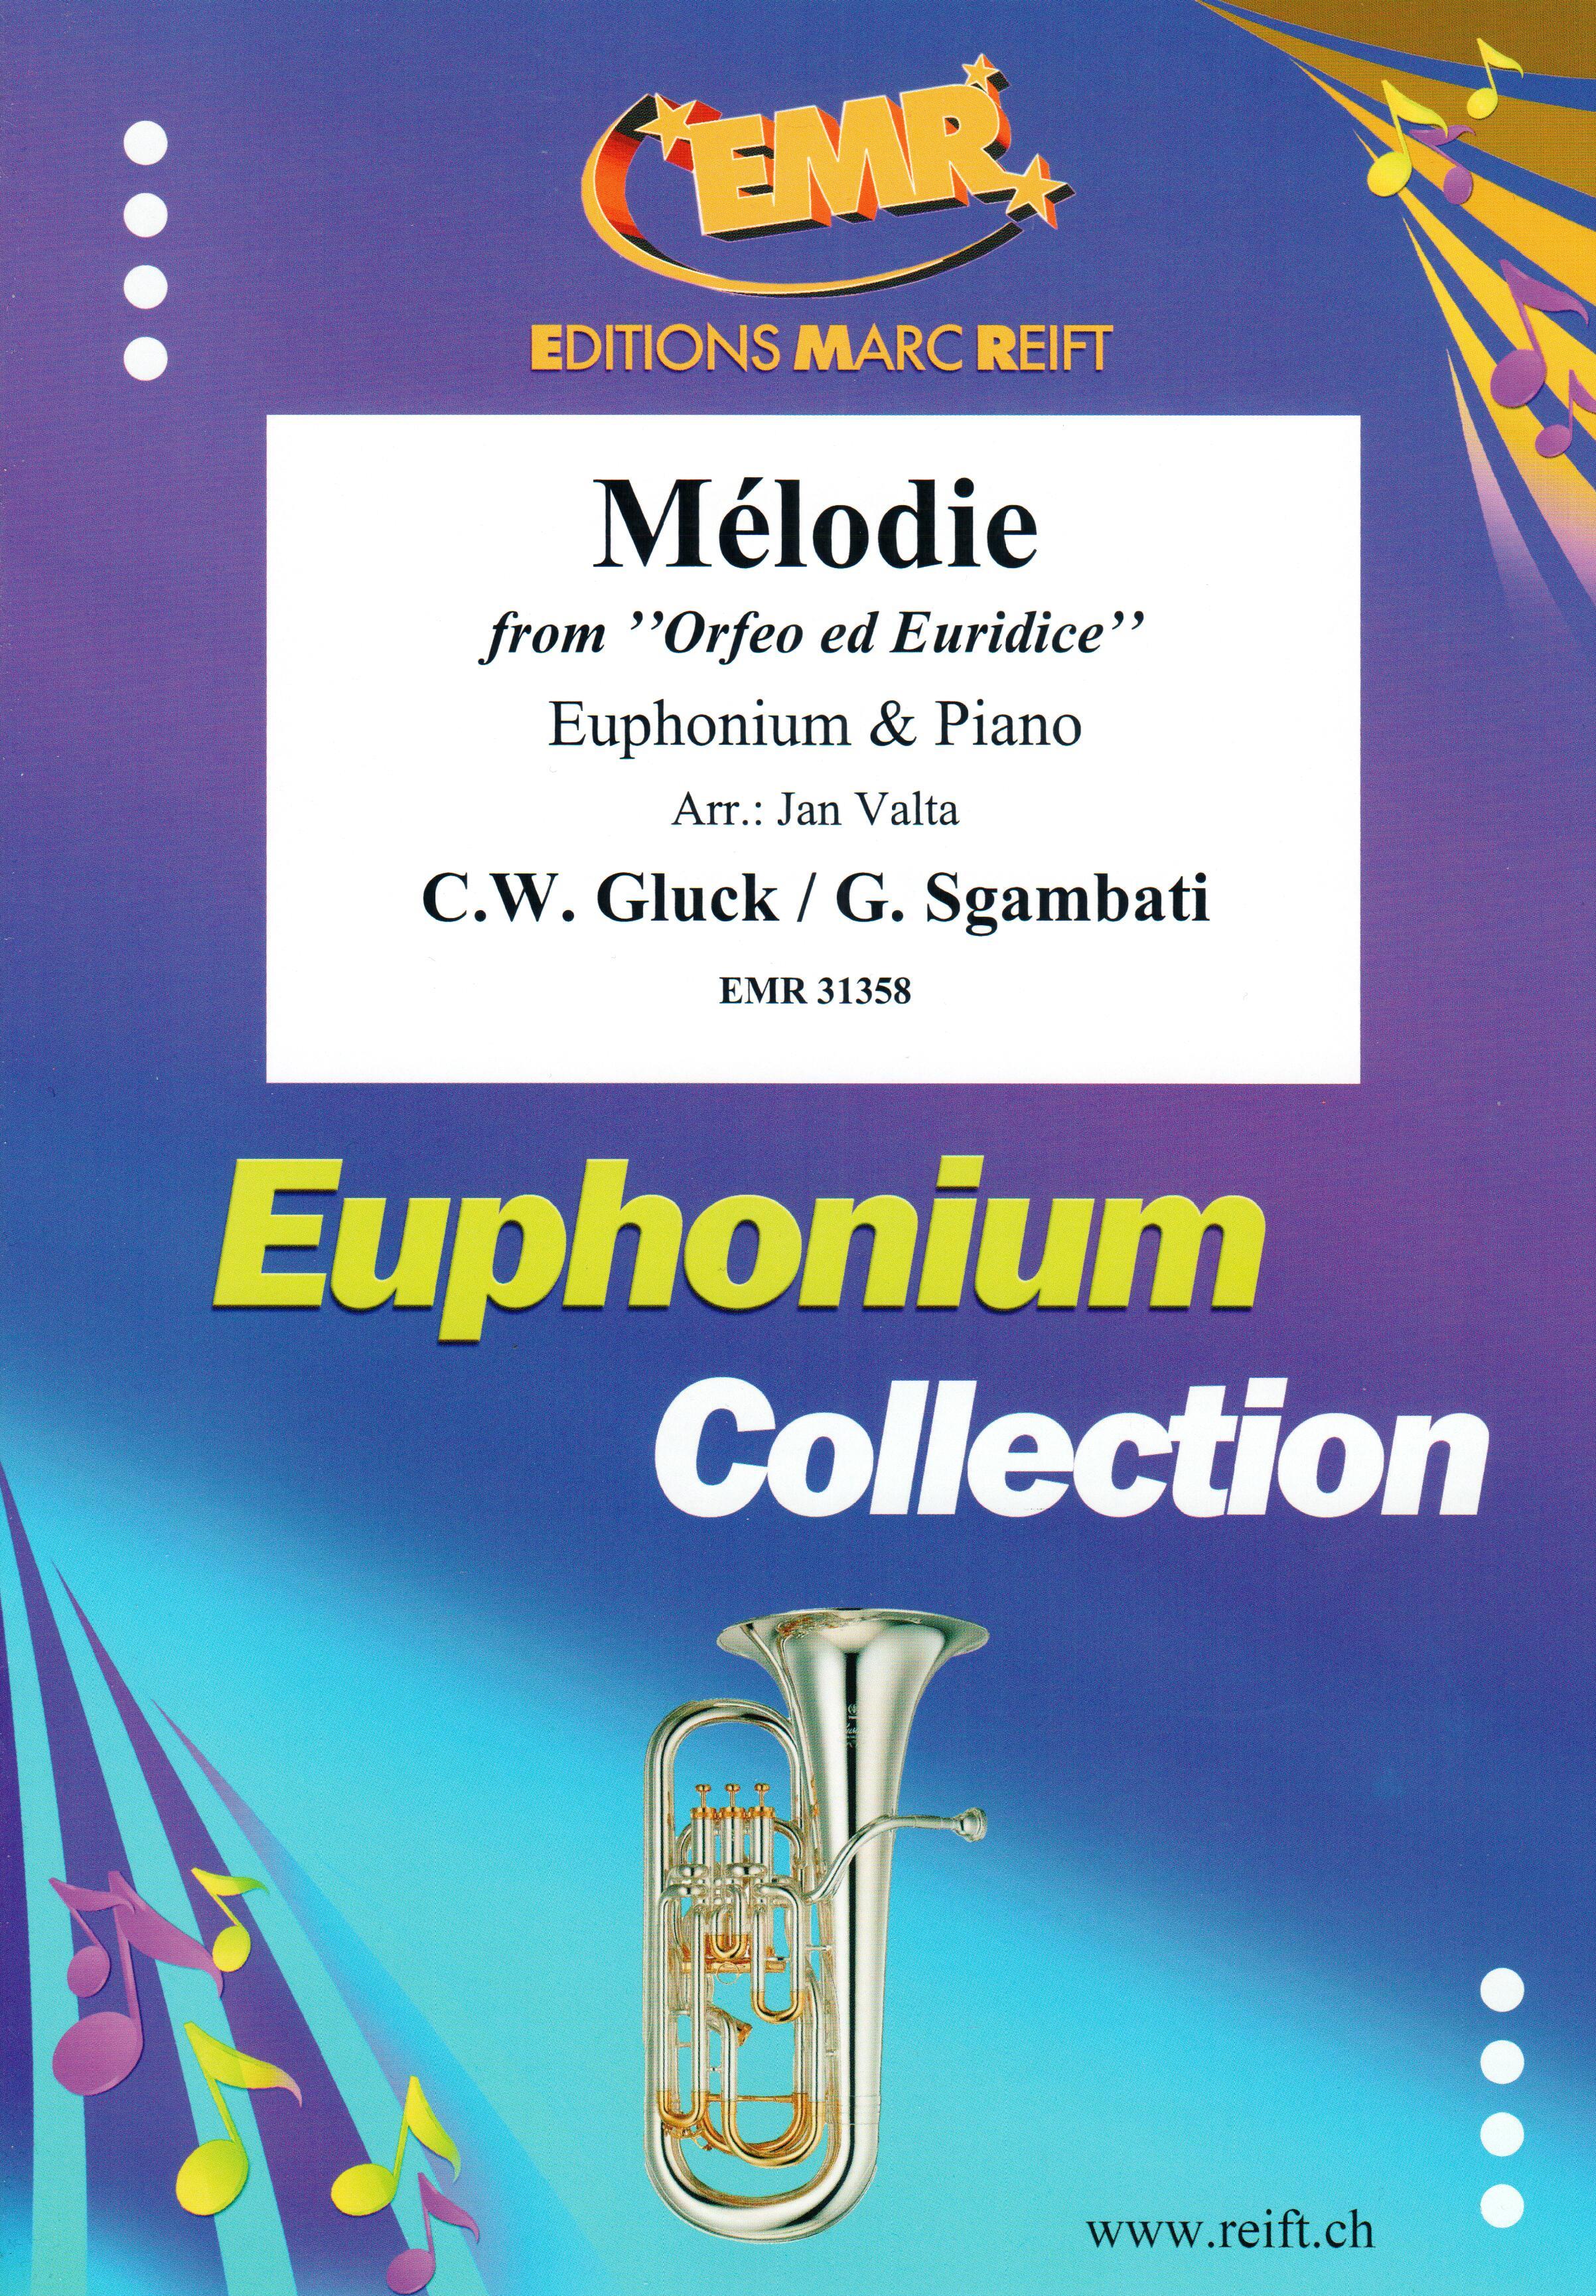 MéLODIE, SOLOS - Euphonium